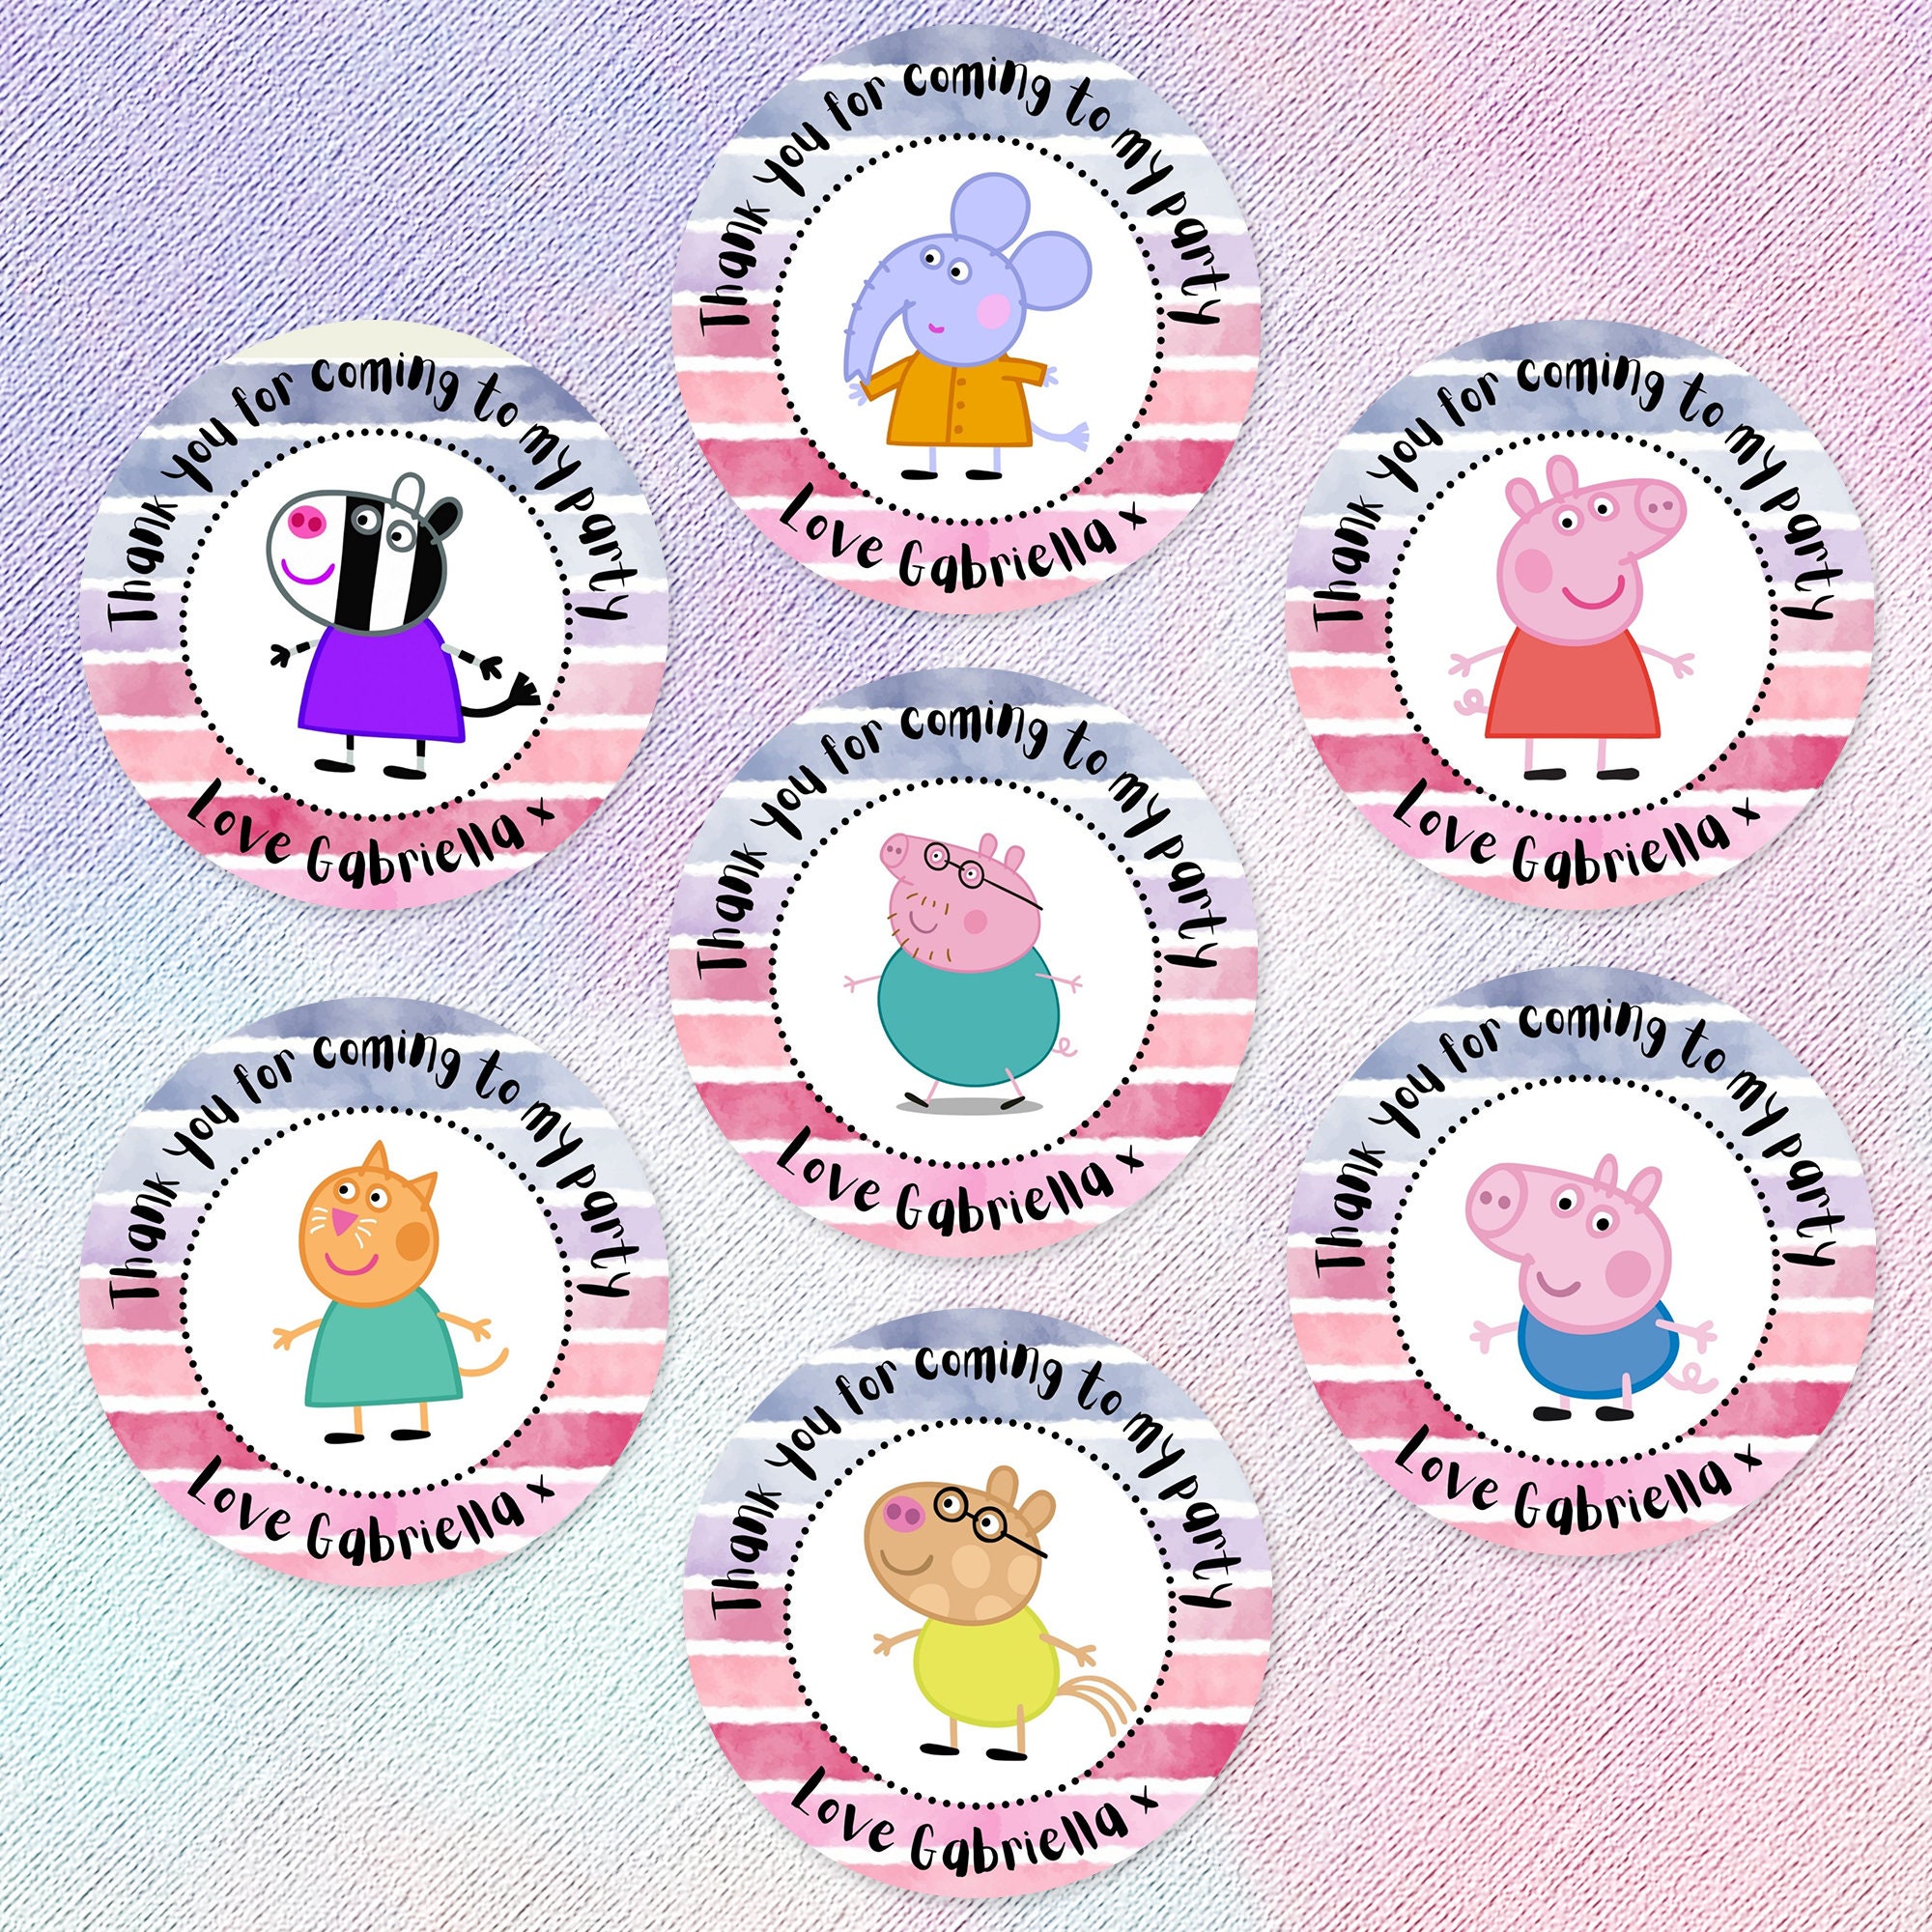 Stickers PEPPA PIG (10x19)